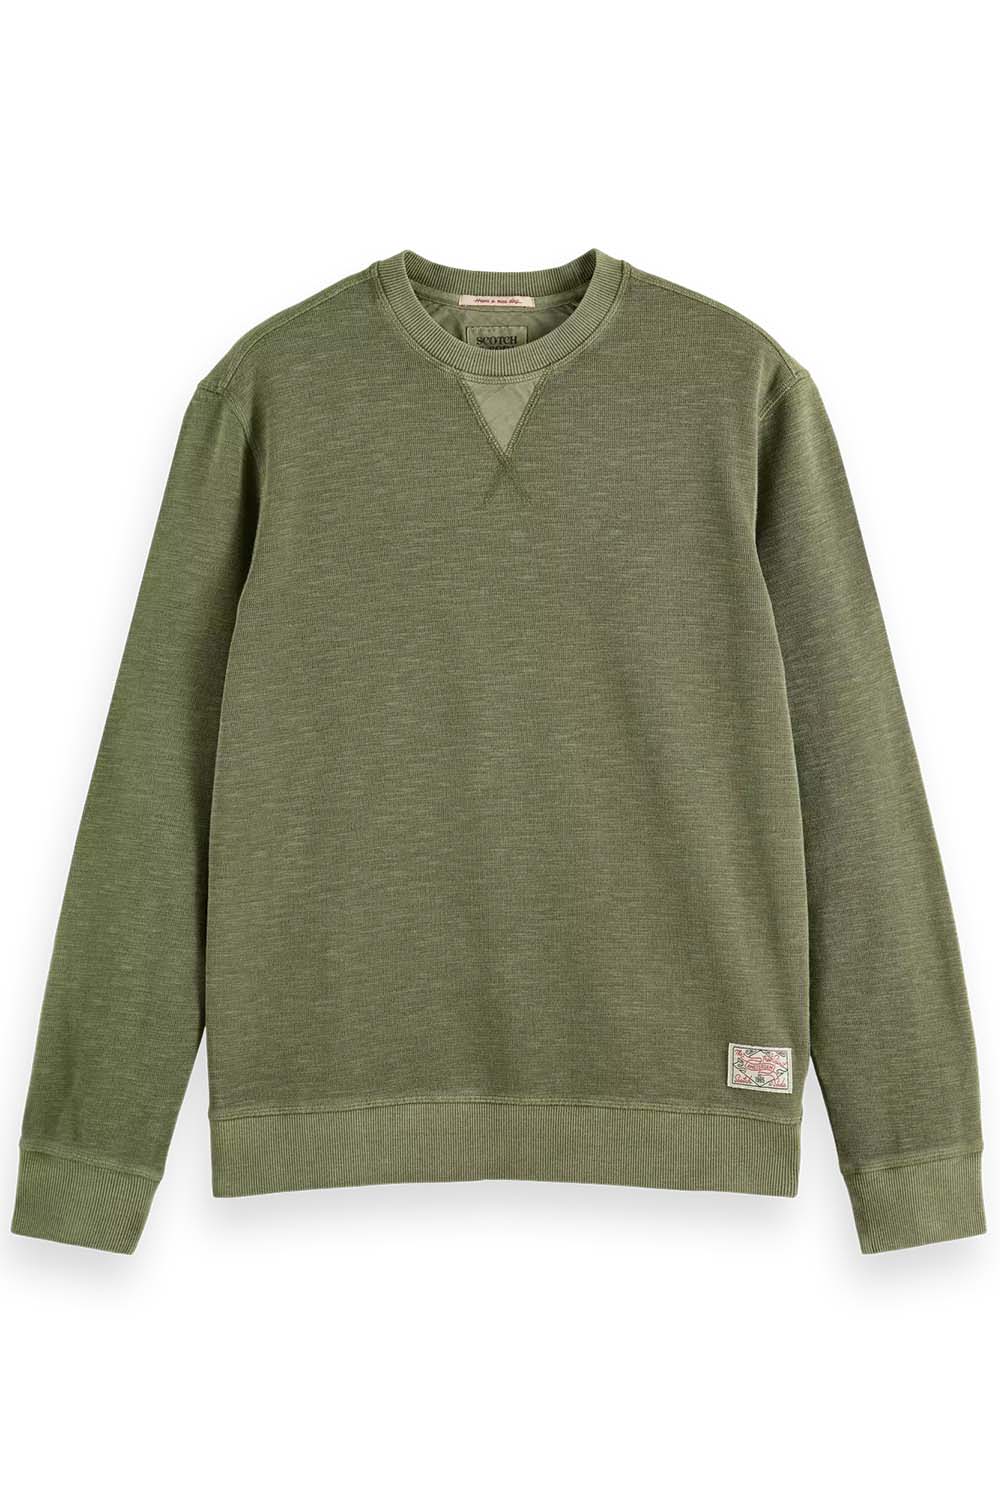 Scotch & Soda - Garment Dyed Sweatshirt - Army - Flatlay